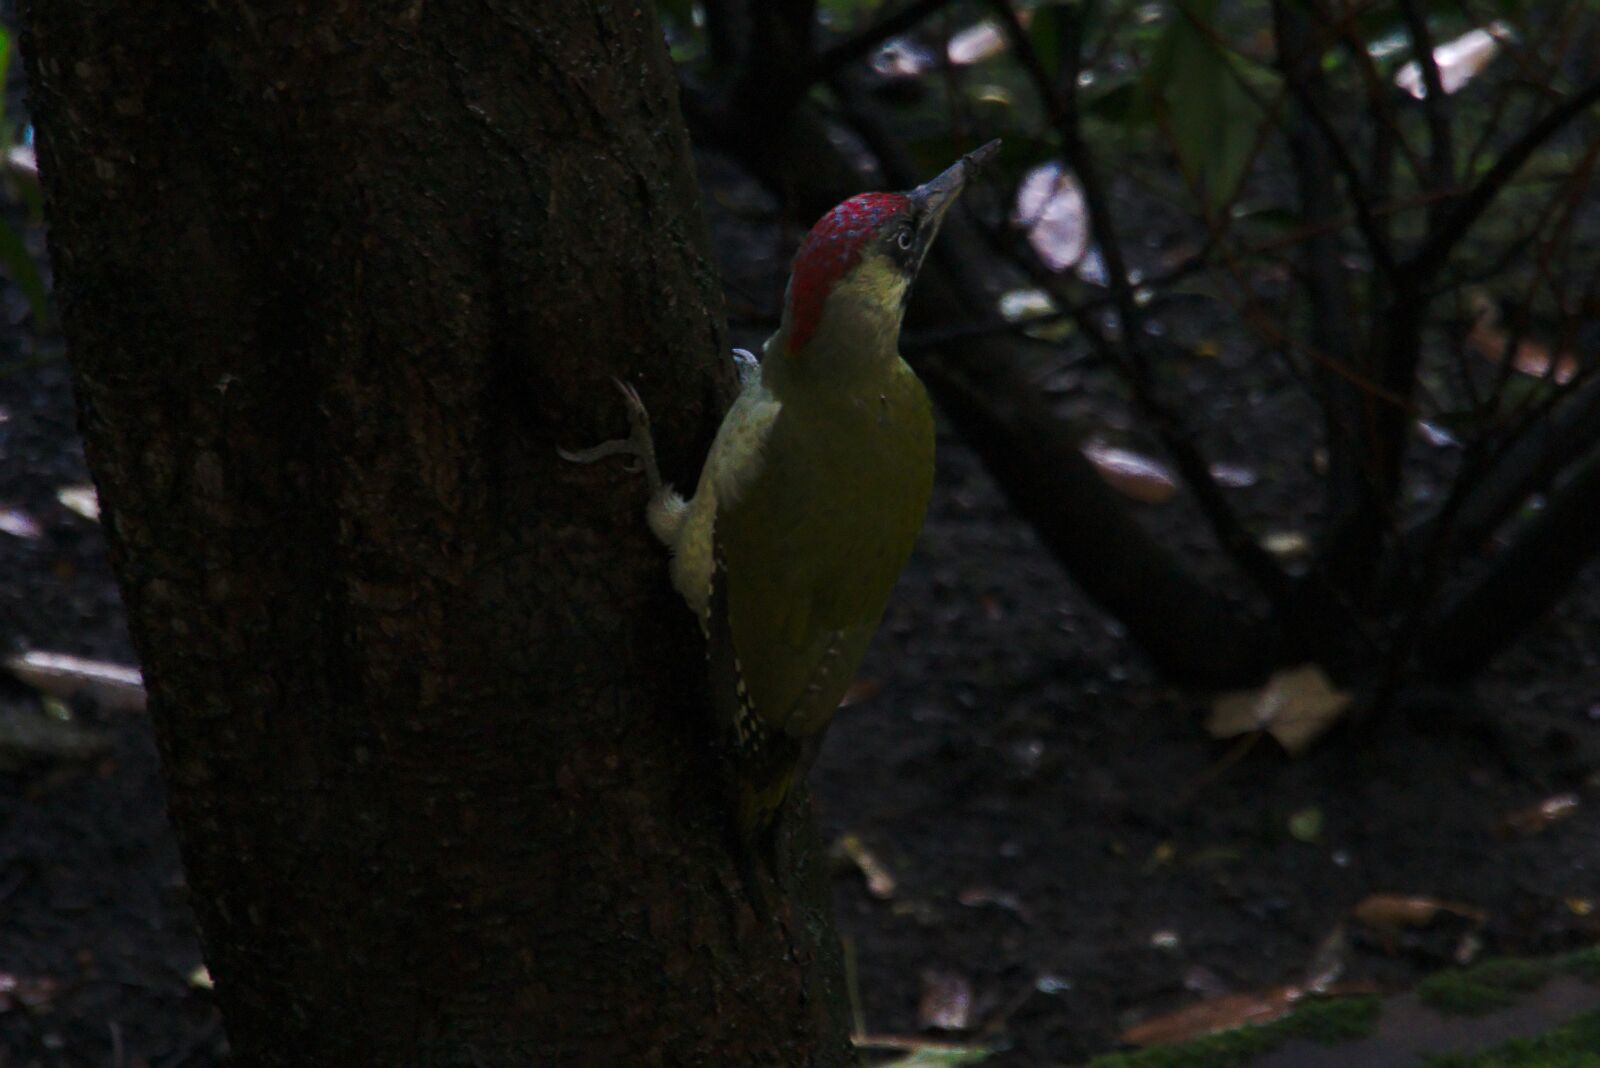 Sony E 18-135mm F3.5-5.6 OSS sample photo. Green woodpecker, bird, tree photography